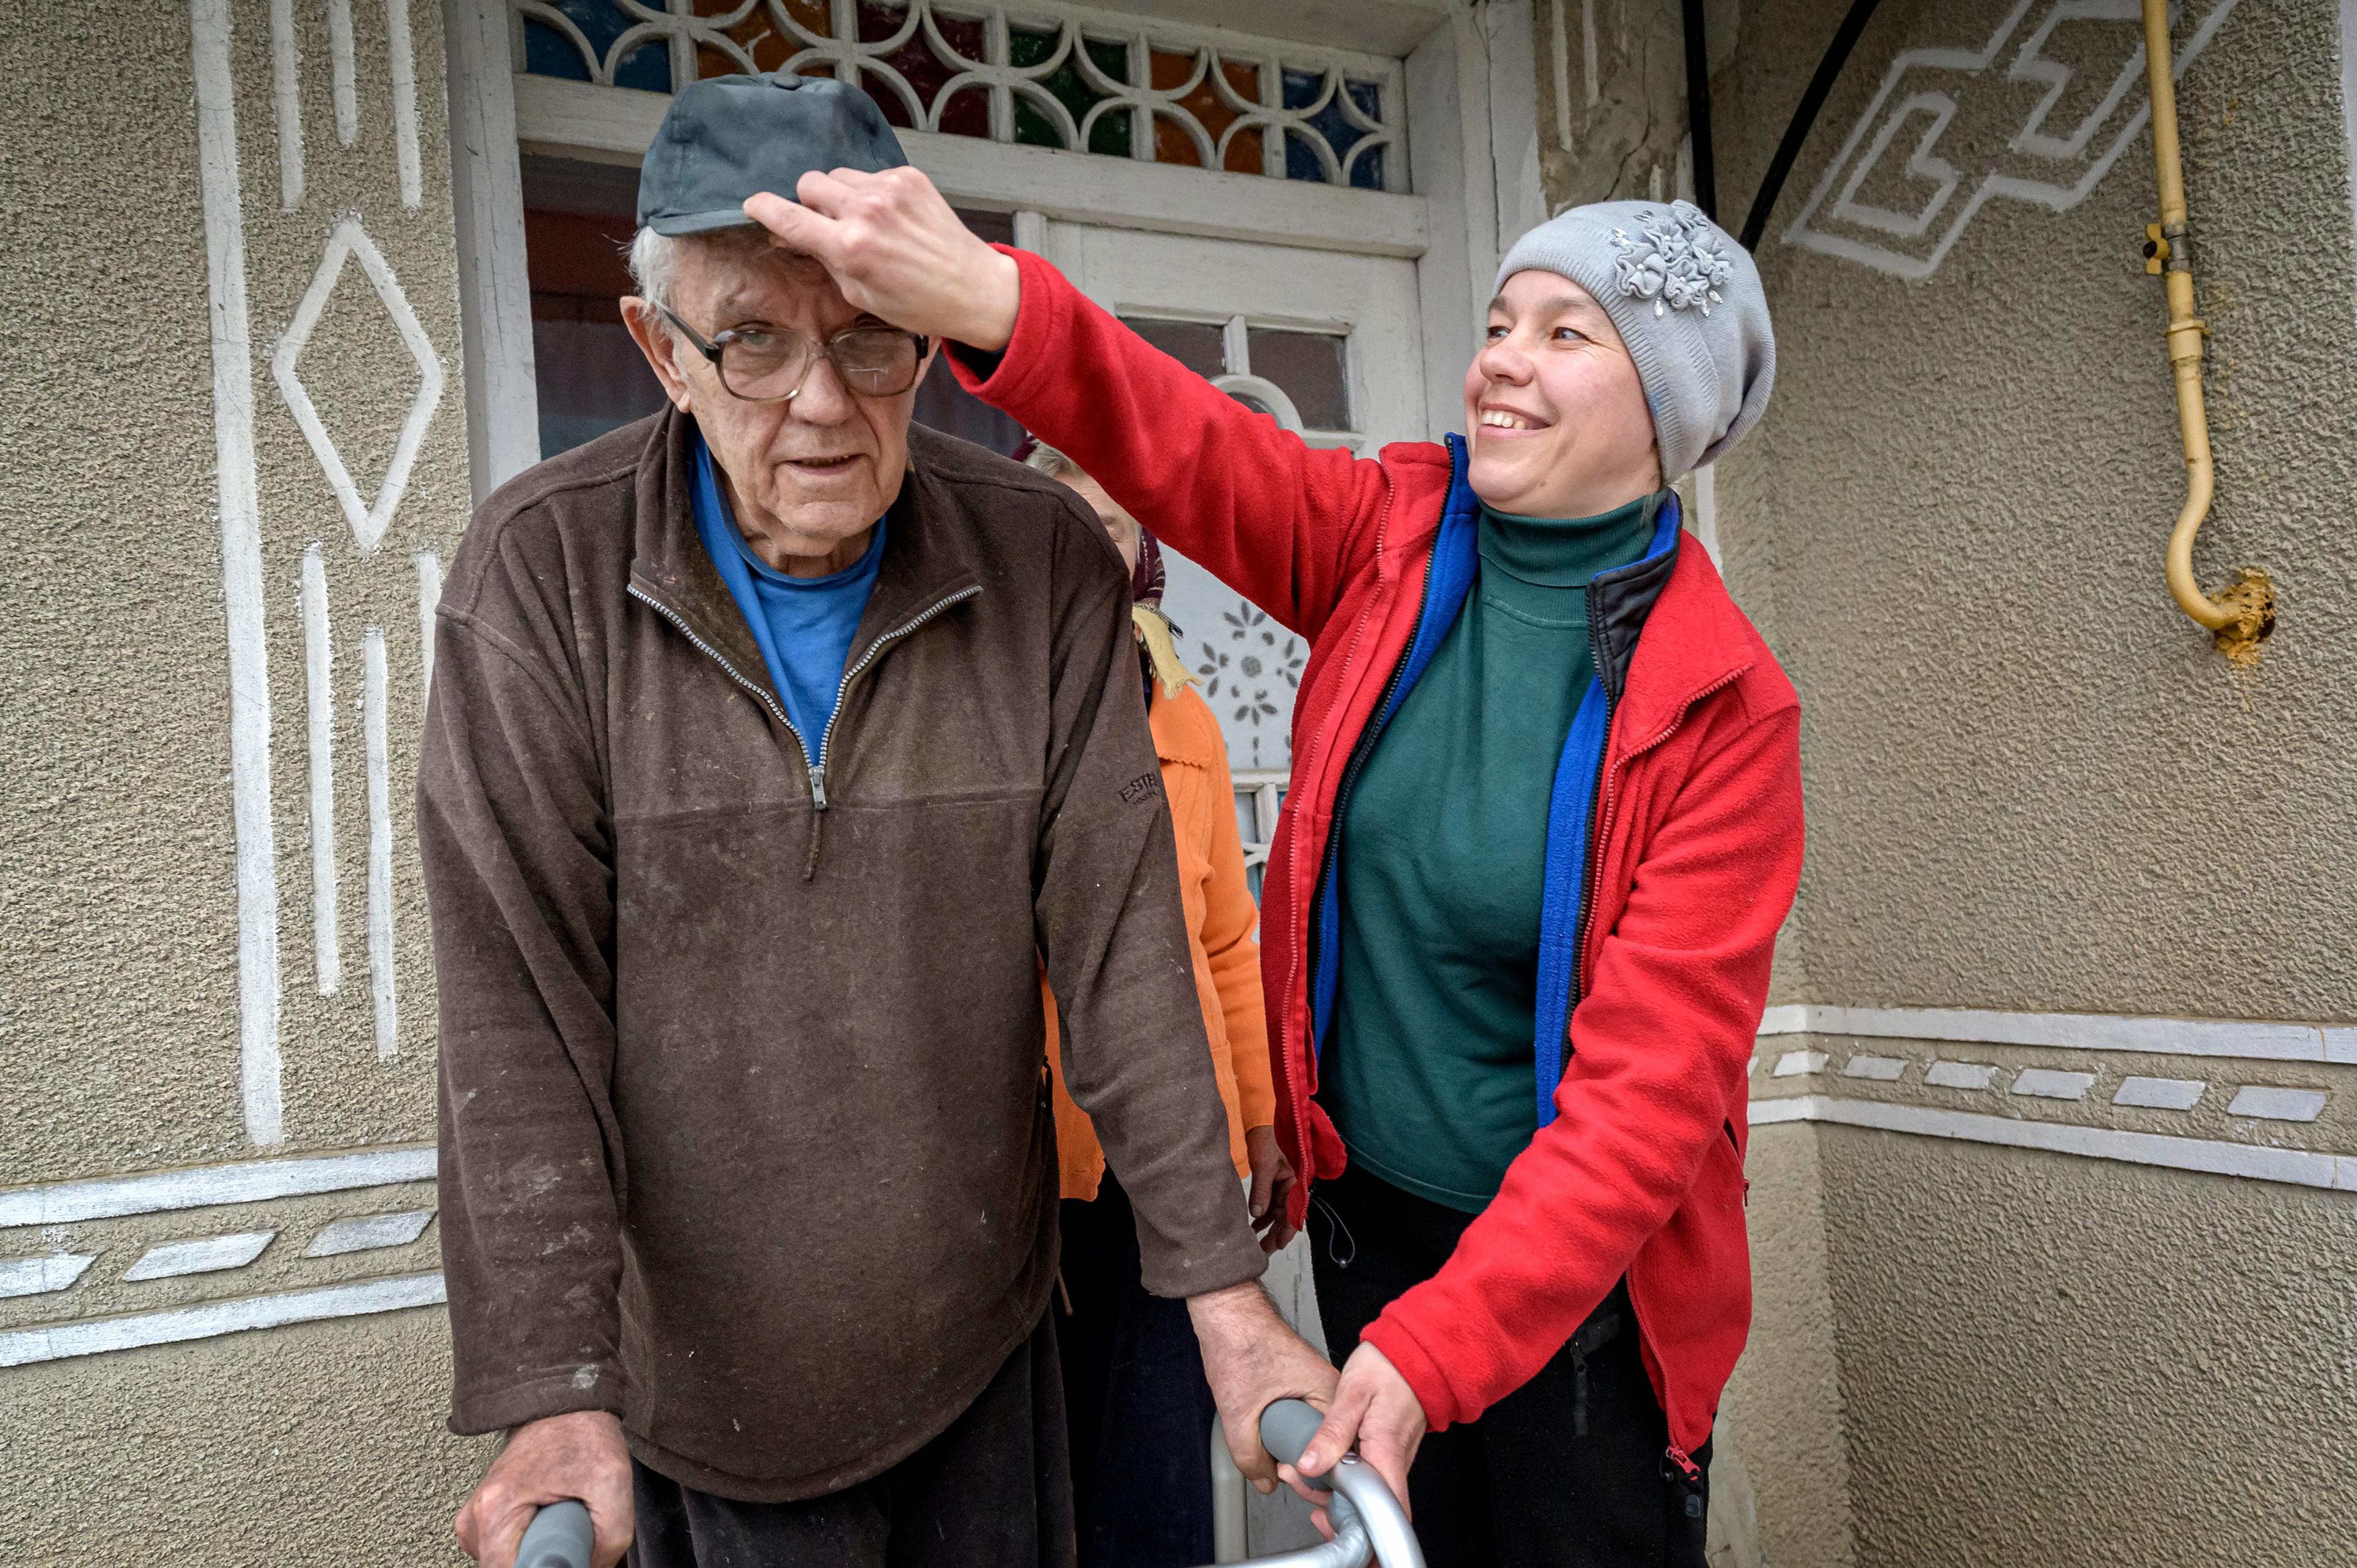 Un homme âgé se tient à l'entrée de la maison. Une femme avec une veste rouge lui met sa casquette correctement et rit.